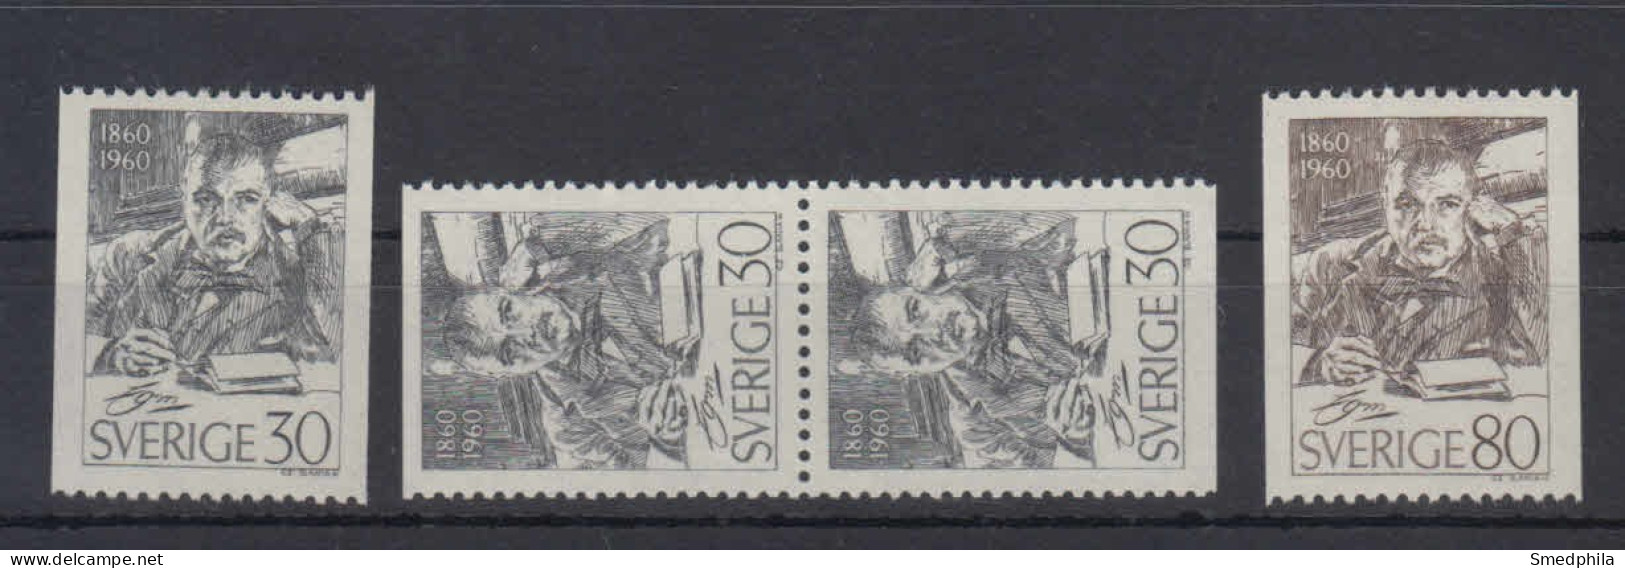 Sweden 1960 - Michel 455-456 MNH ** - Neufs